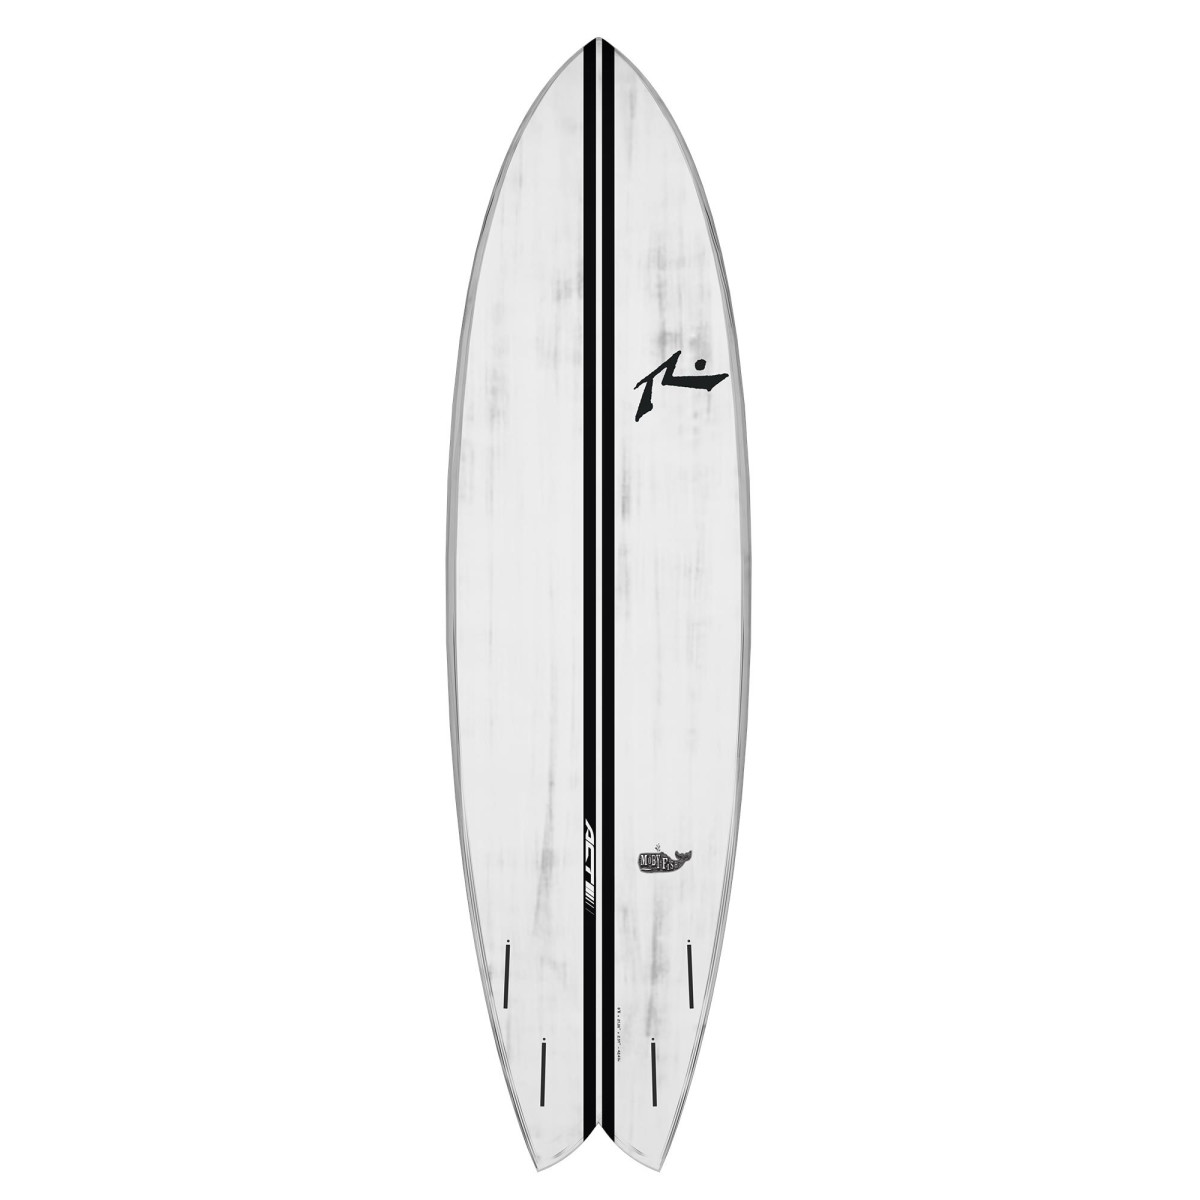 程度良好】SOLID Surf Boards 7.0 blue/white種類サーフボード